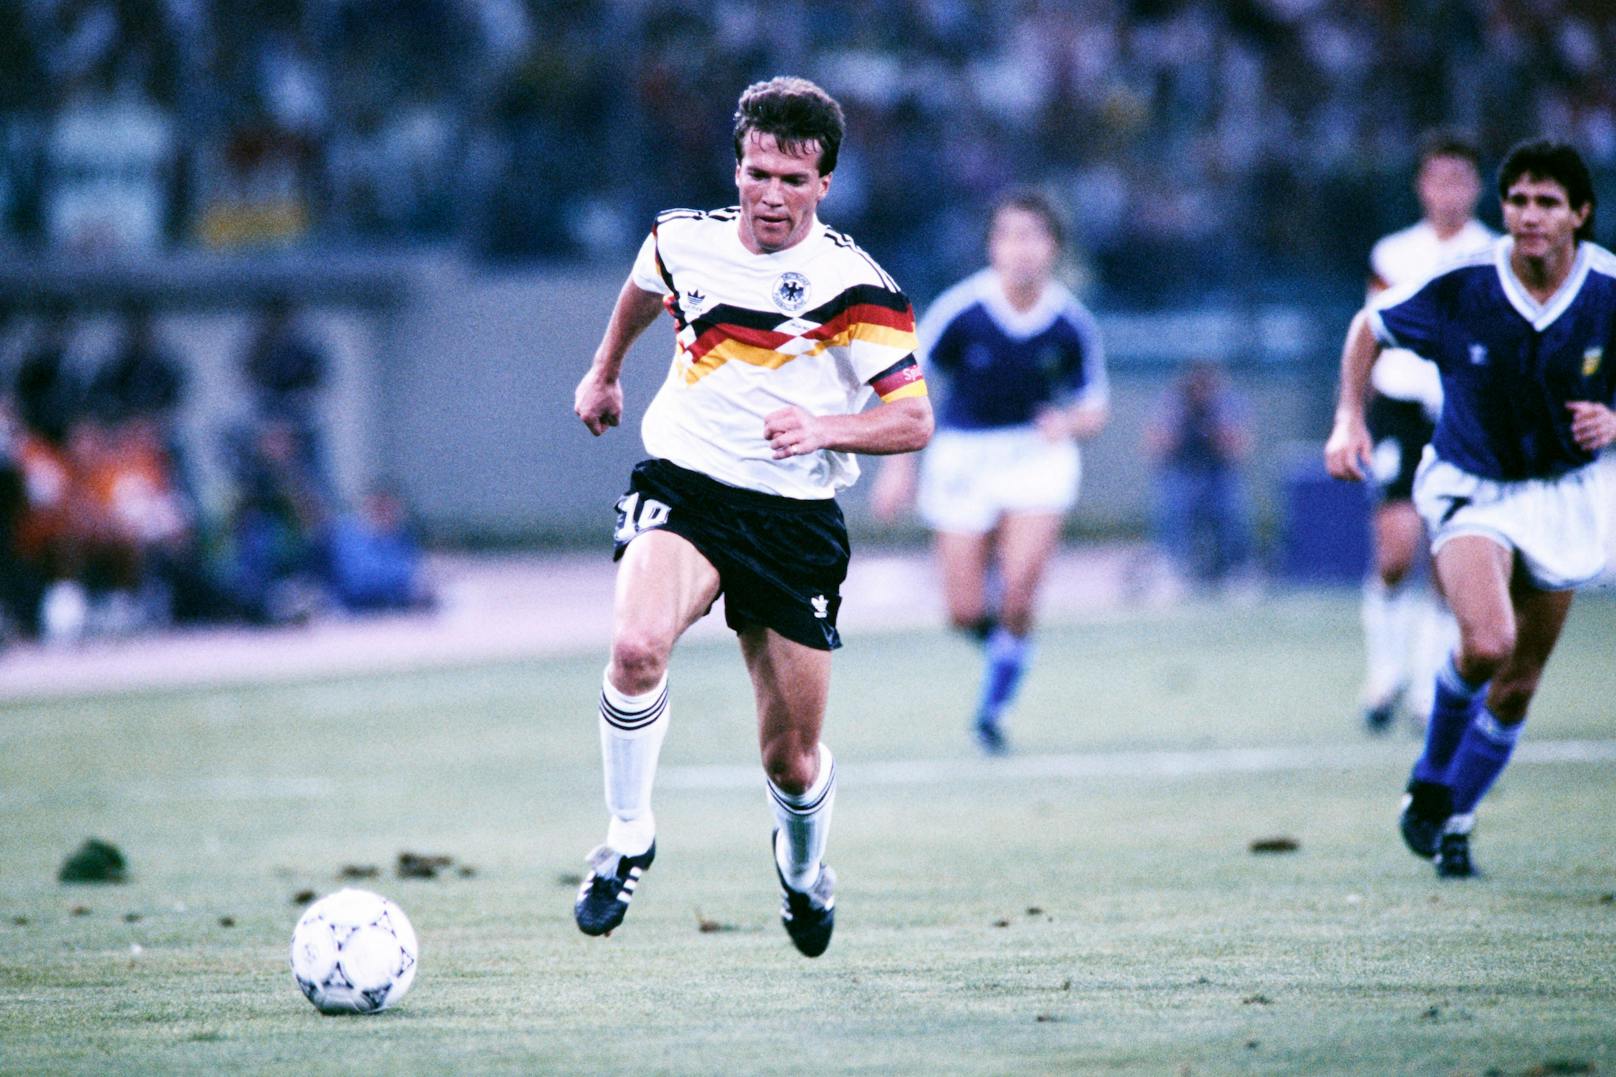 Die meisten Endrunden-Einsätze: Deutschlands Lothar Matthäus führt das Ranking mit 25 Spielen an.